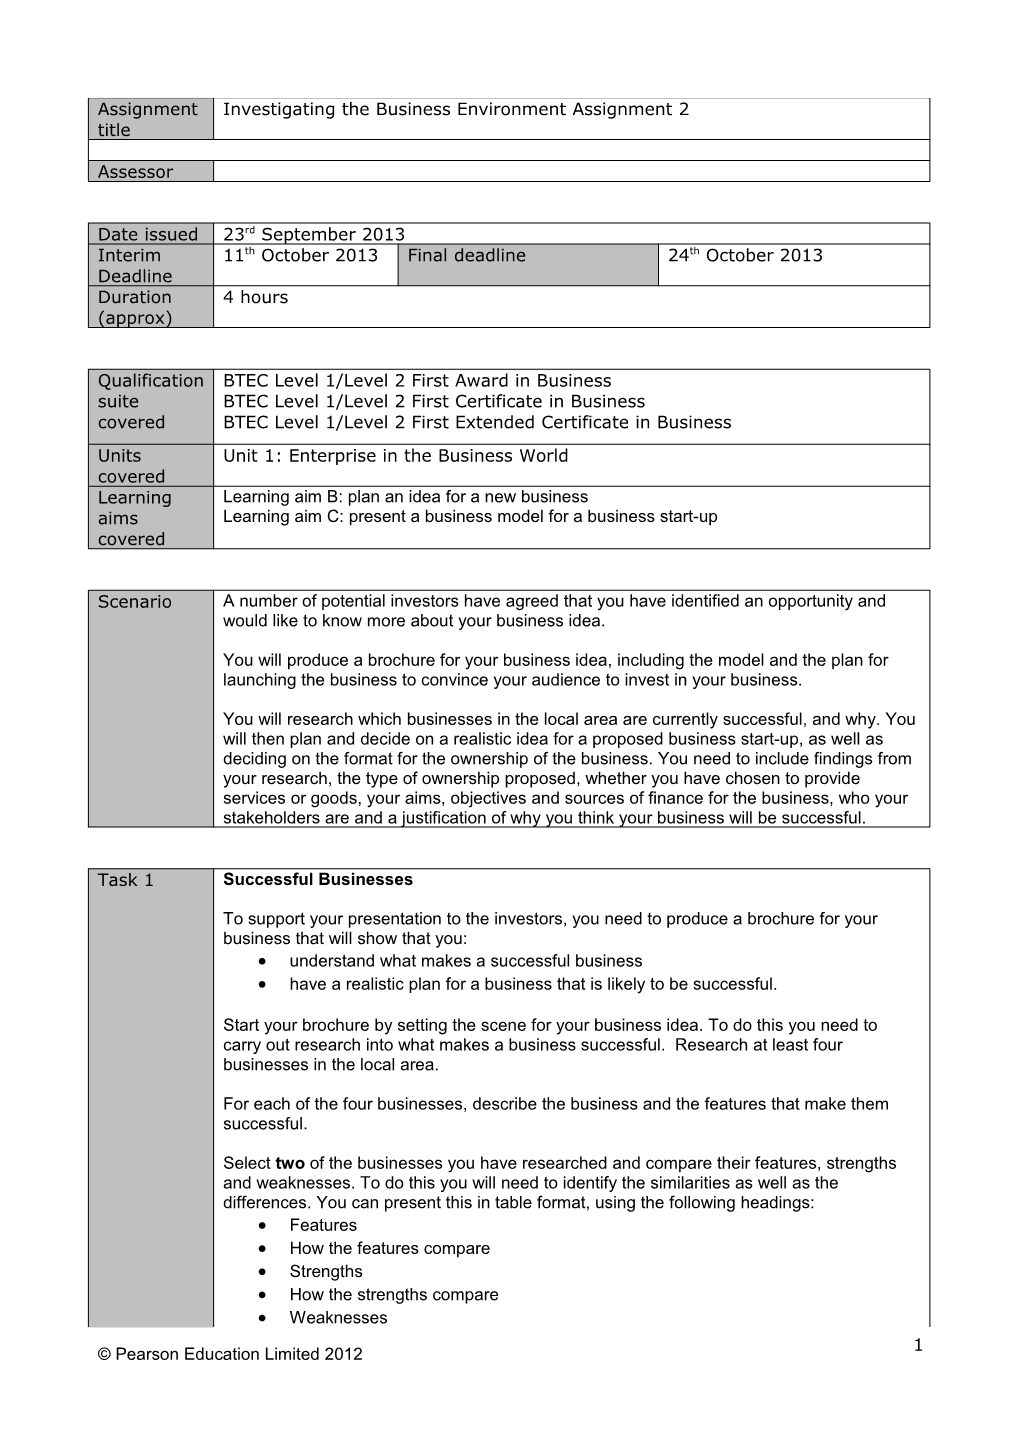 Authorised Assignment Brief - Unit 1 Assignment 2